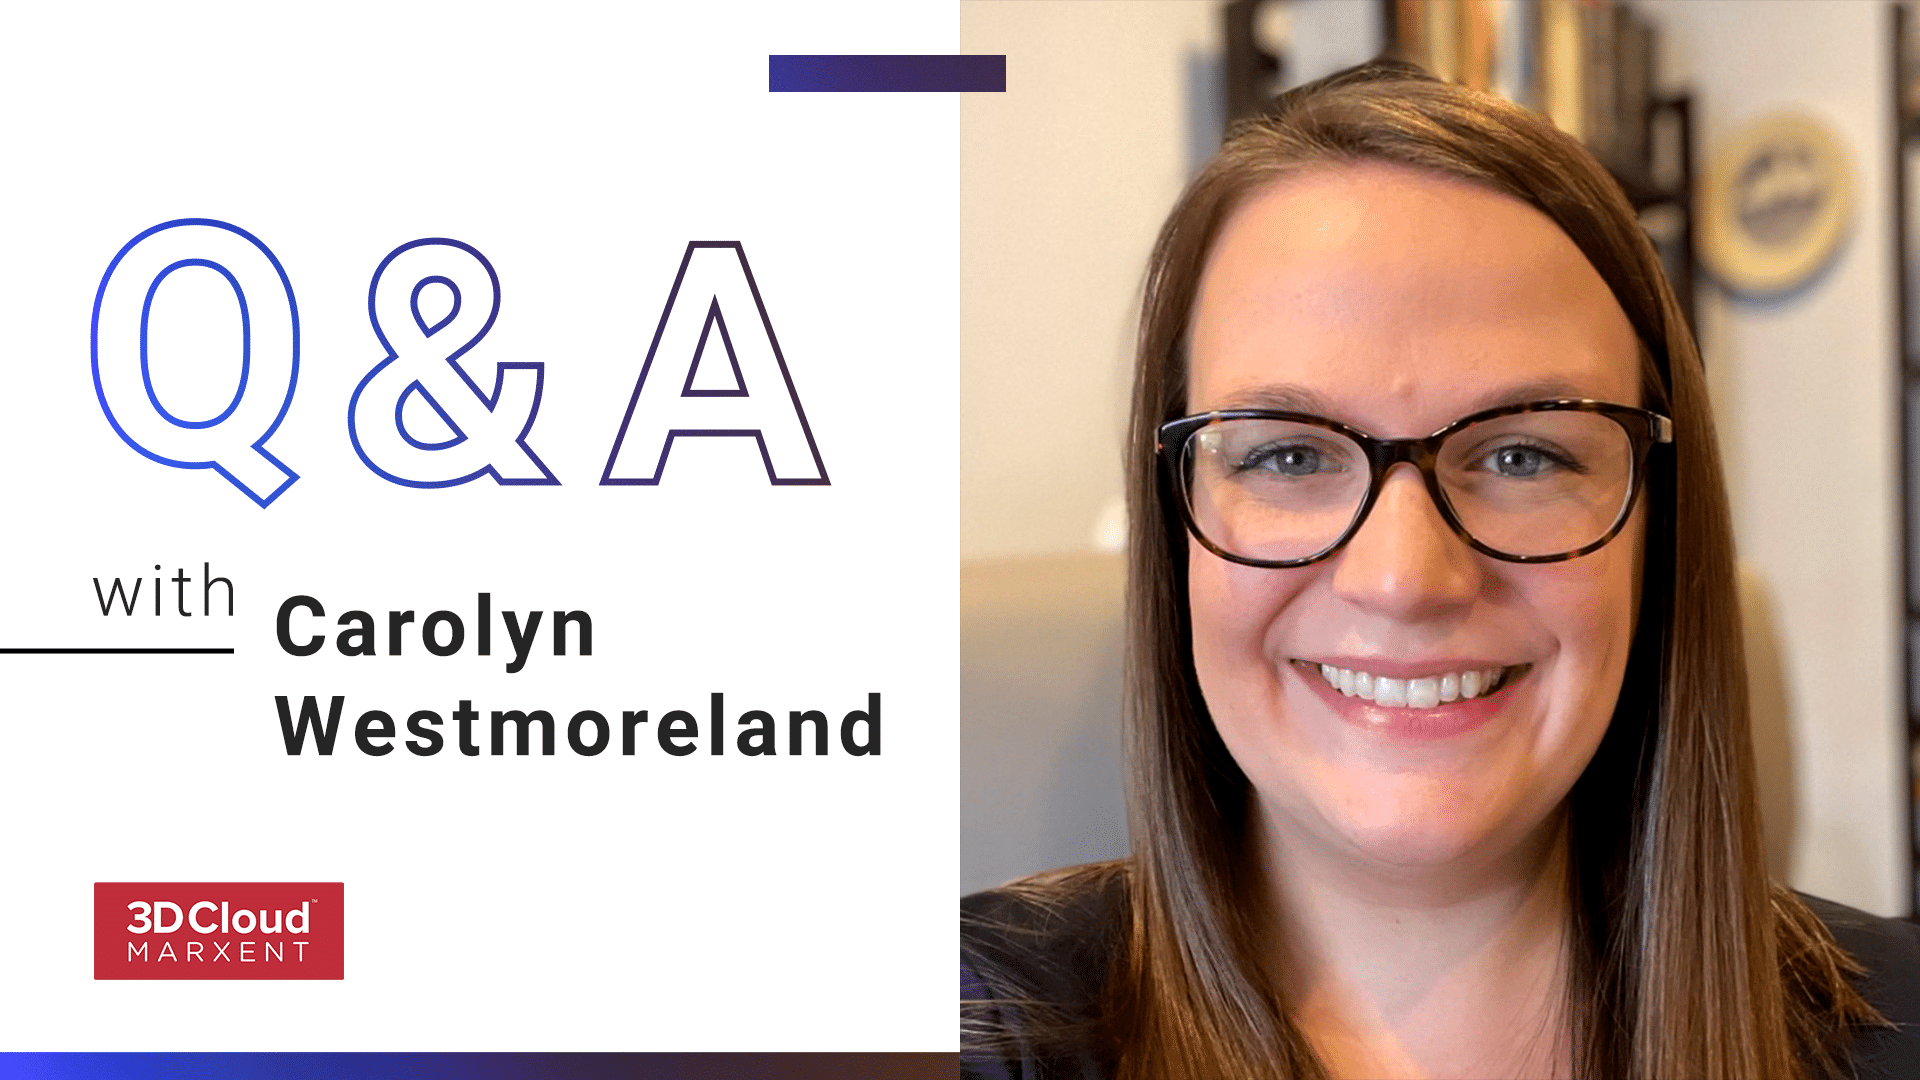 Carolyn Westmoreland Employee Q&A